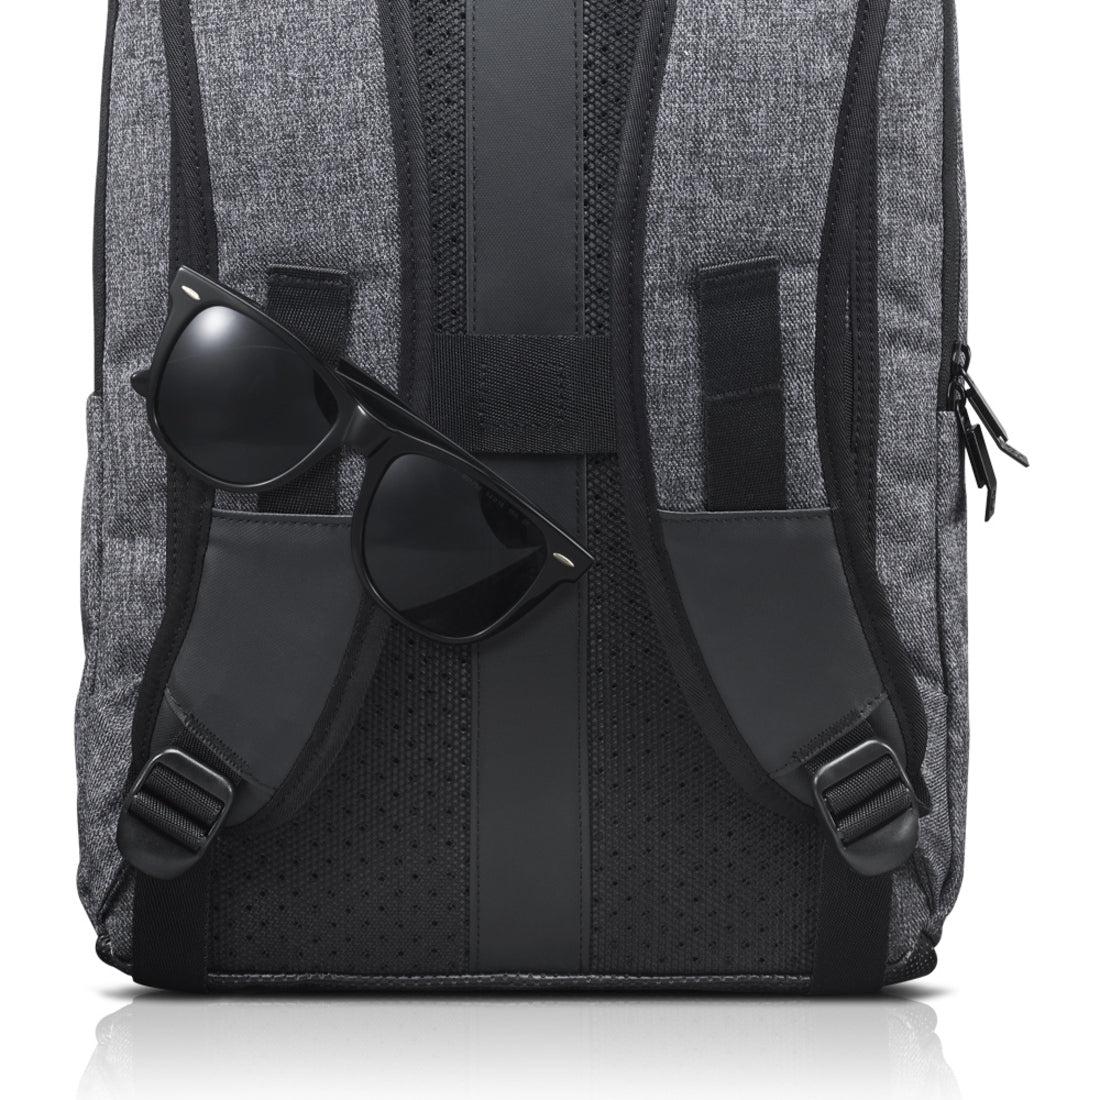 Lenovo Legion Carrying Case (Backpack) for 15.6" Lenovo Notebook - Gray Black